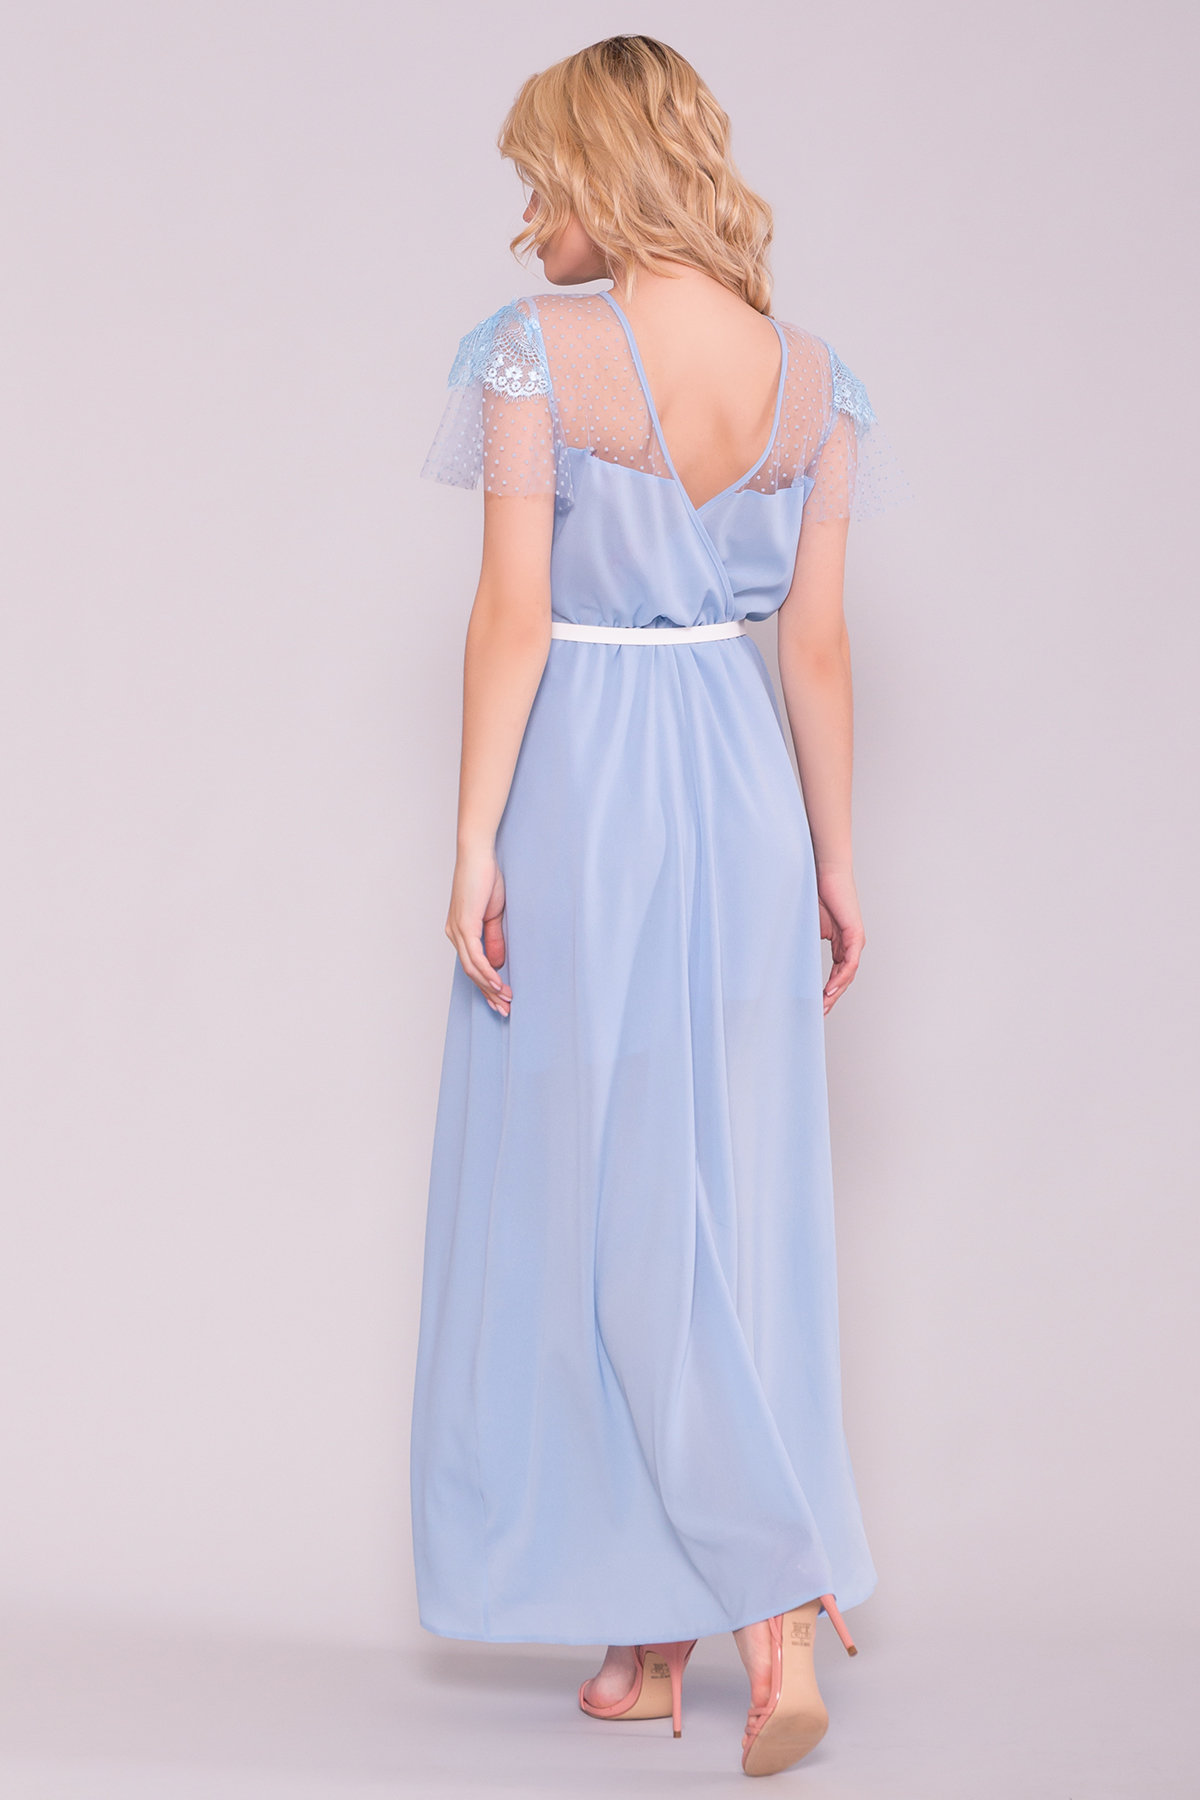 Платье Австралия 7333 АРТ. 43031 Цвет: Голубой - фото 2, интернет магазин tm-modus.ru